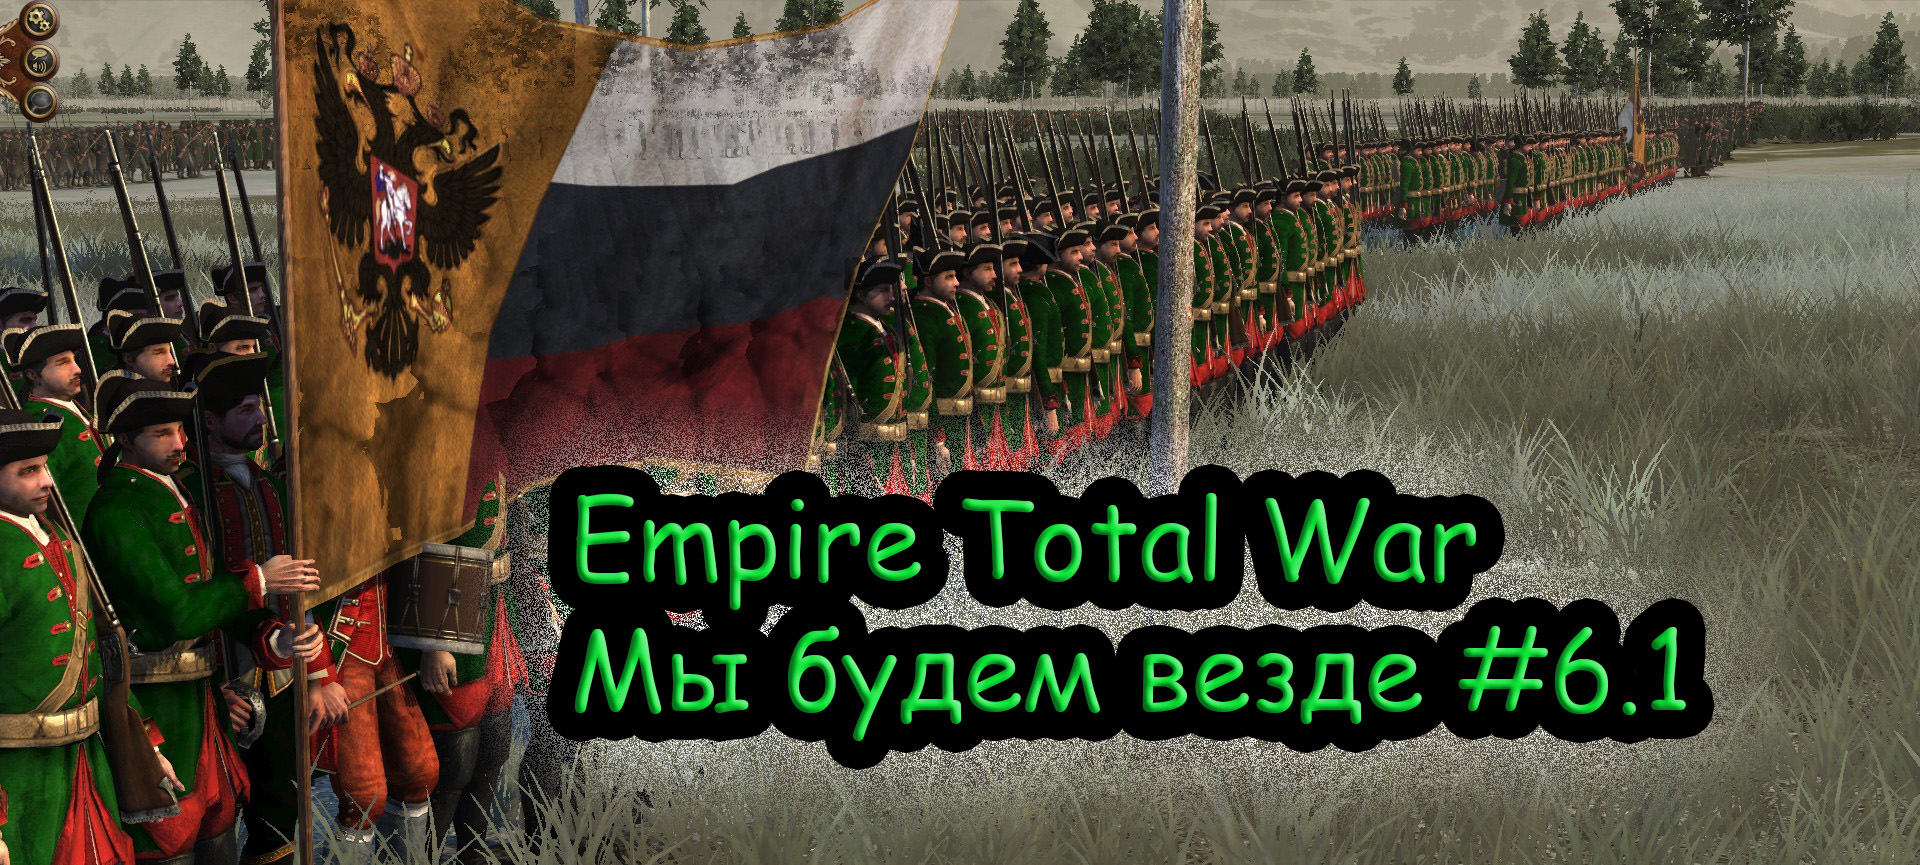 Прохождение Empire Total War за Российскую Империю №6.1